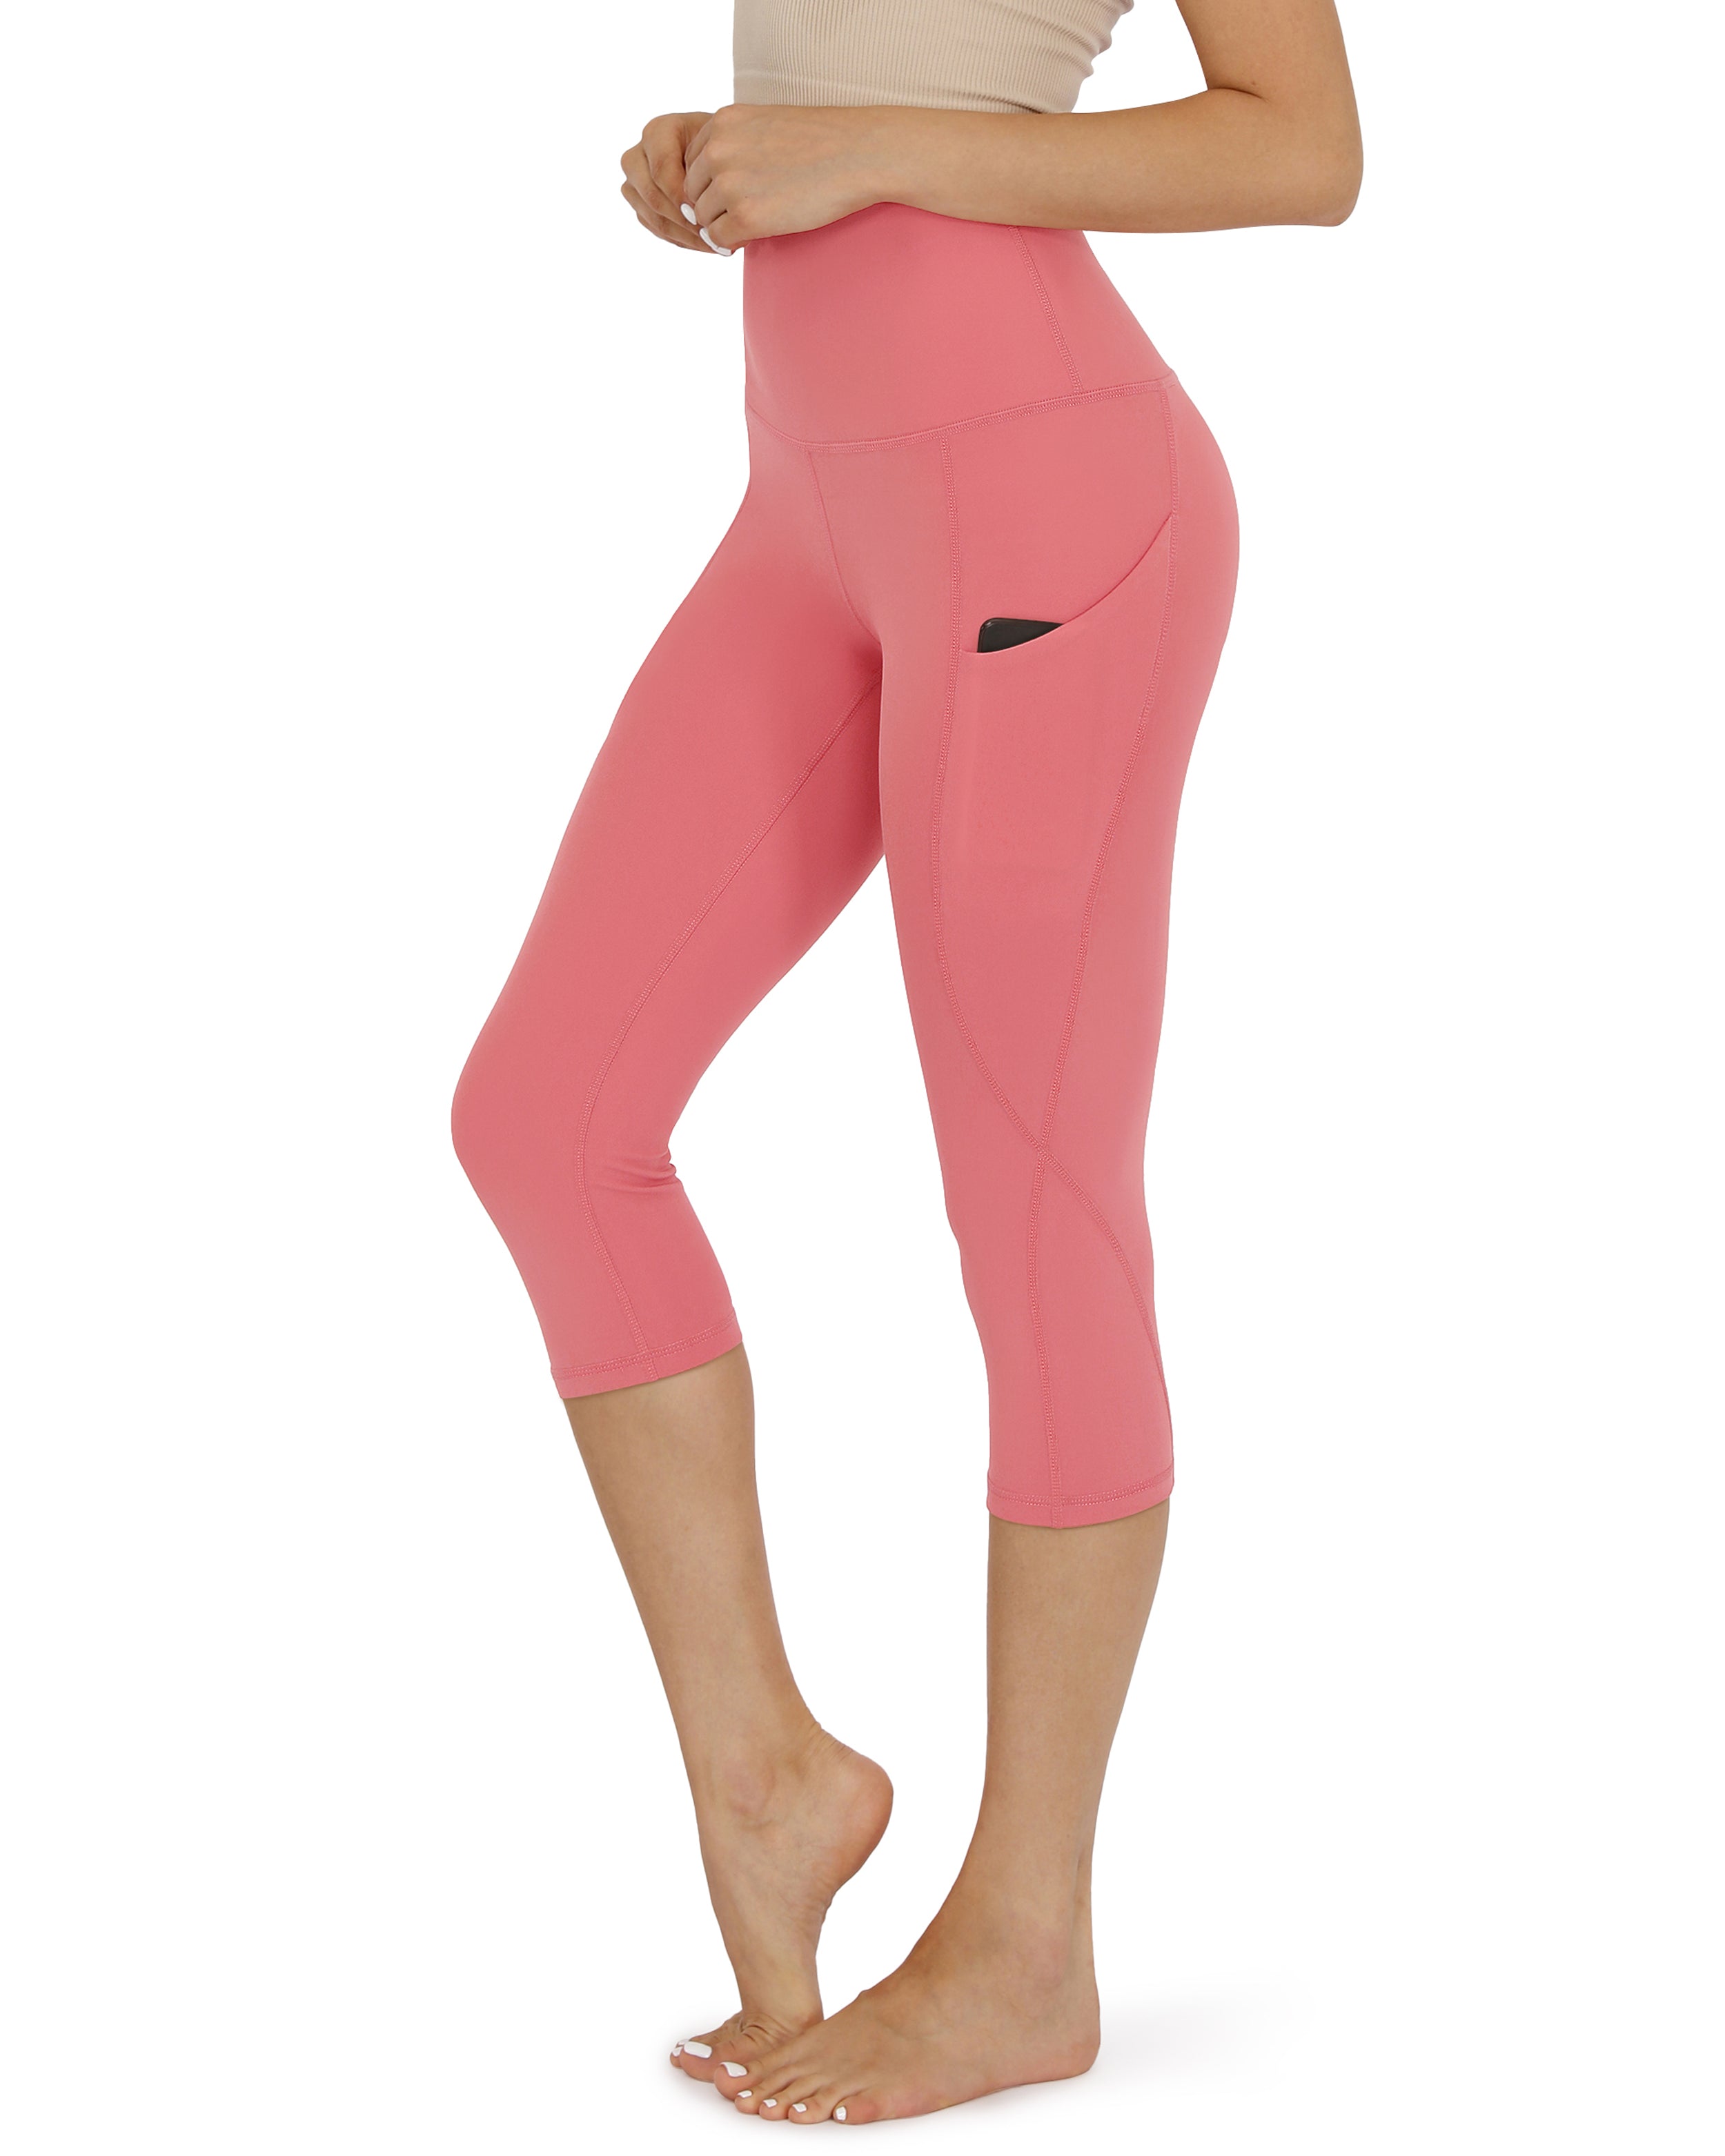 19" High Waist Yoga Capris with Pockets Pink - ododos